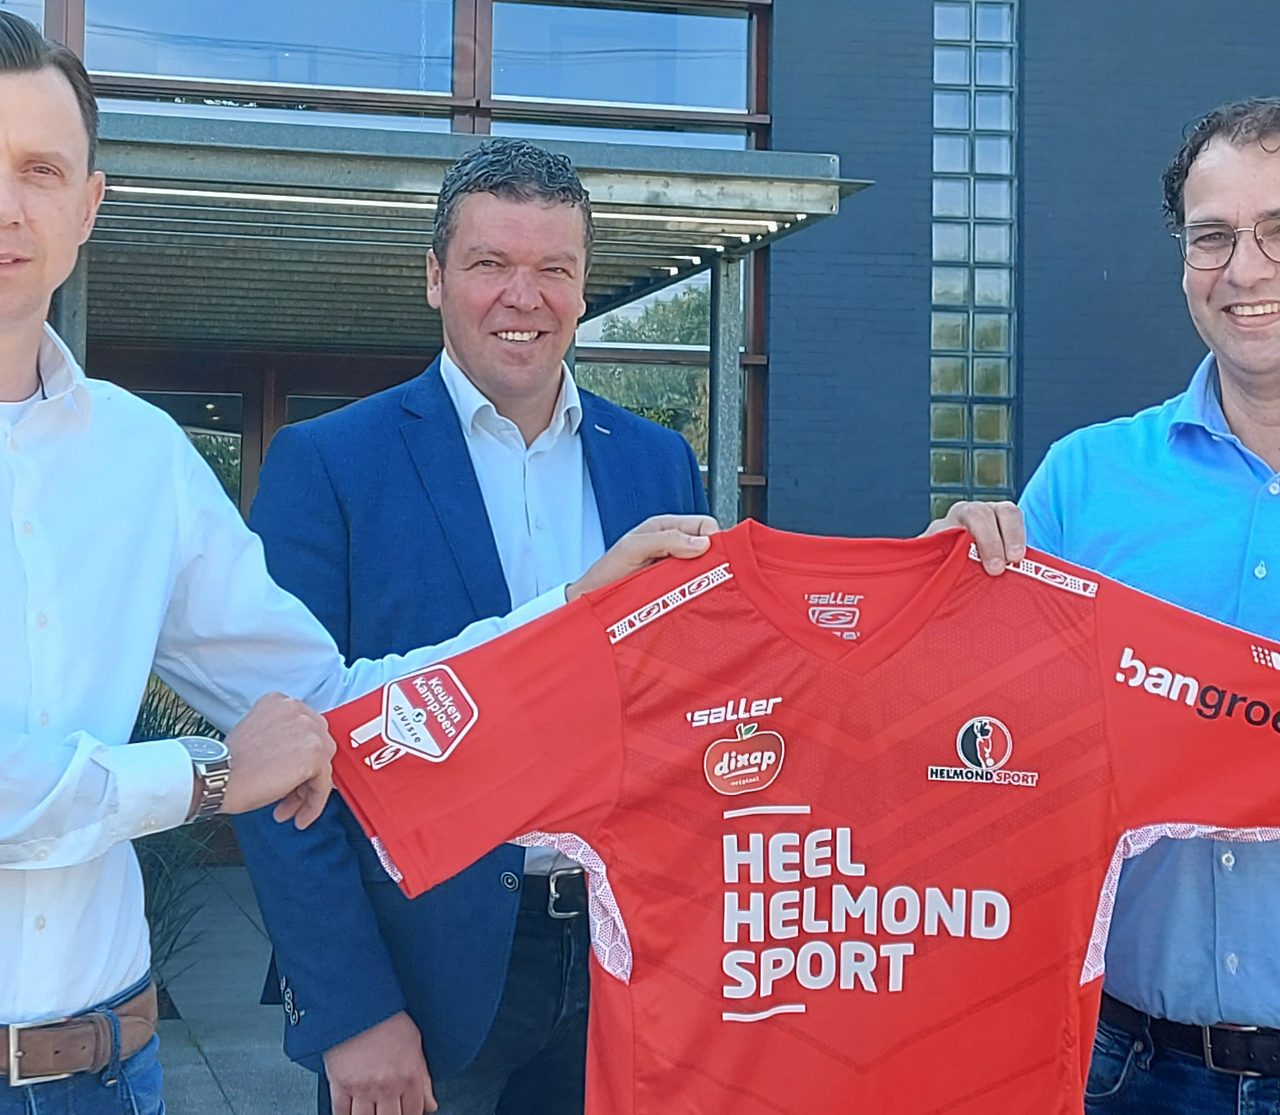 De BanGroep en Helmond Sport slaan handen ineen: “Samen gaan we elkaar versterken en tot mooie resultaten komen”